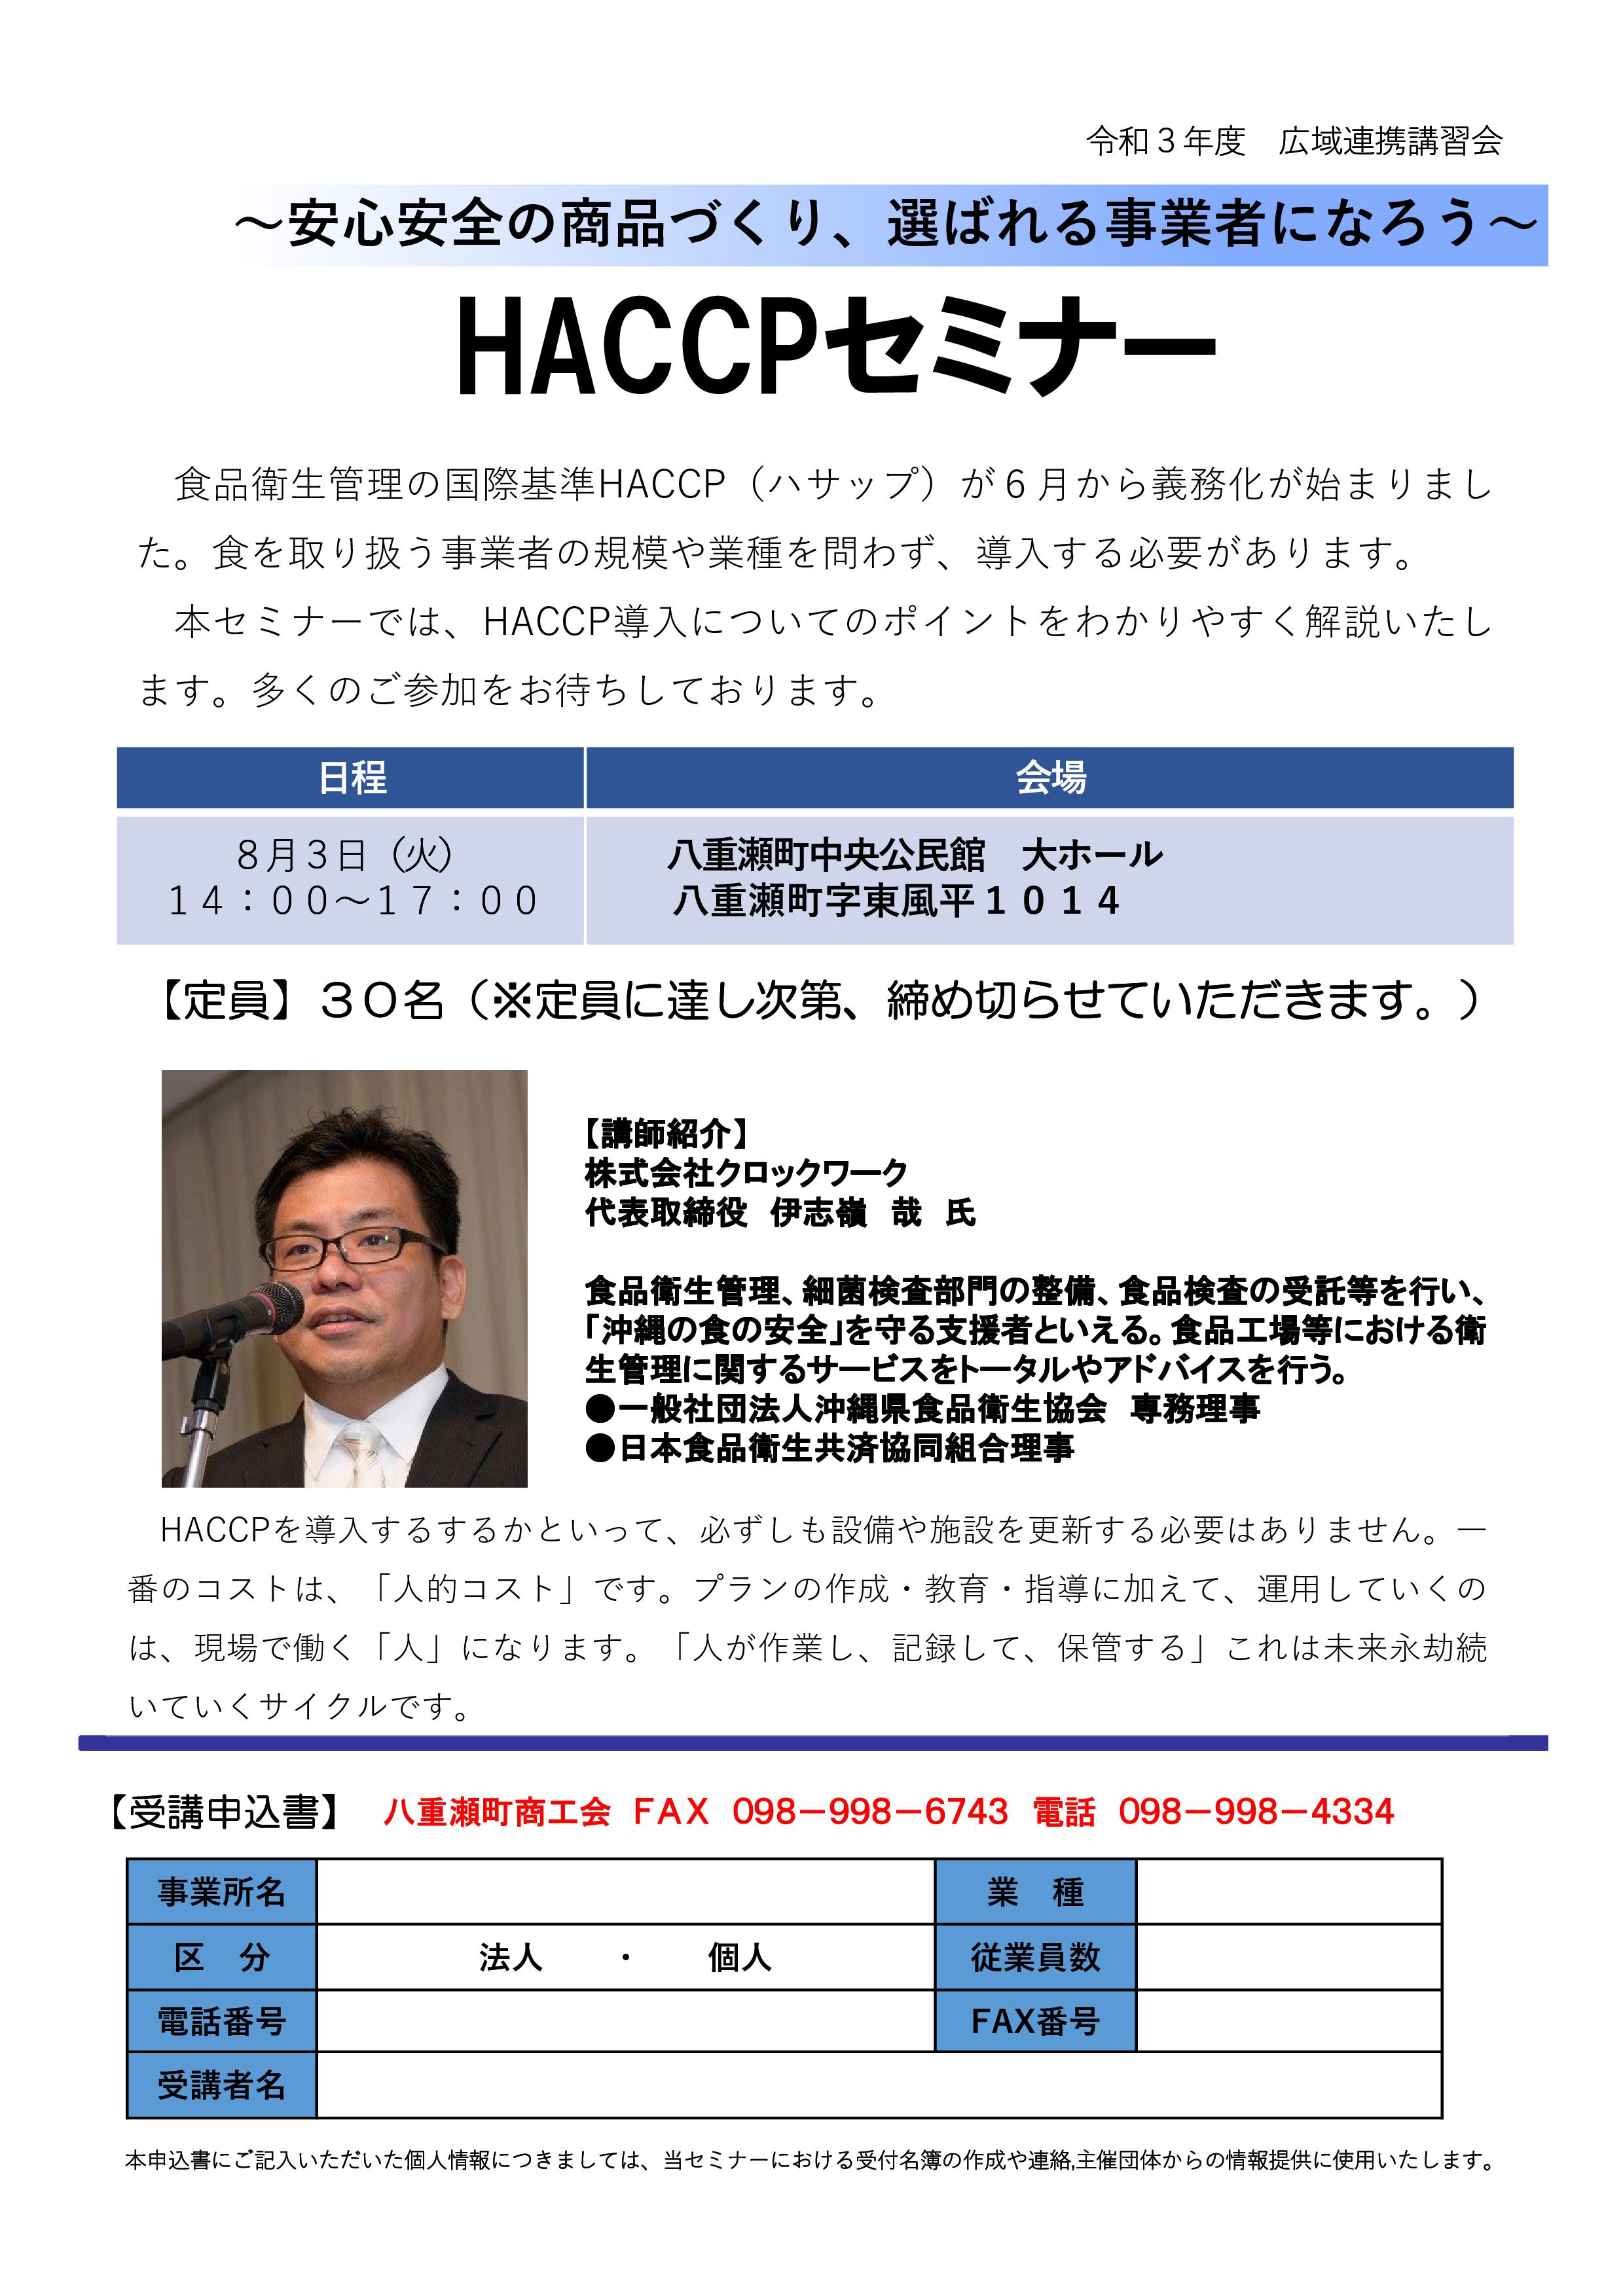 広域連携講習会「HACCPセミナー」のお知らせ